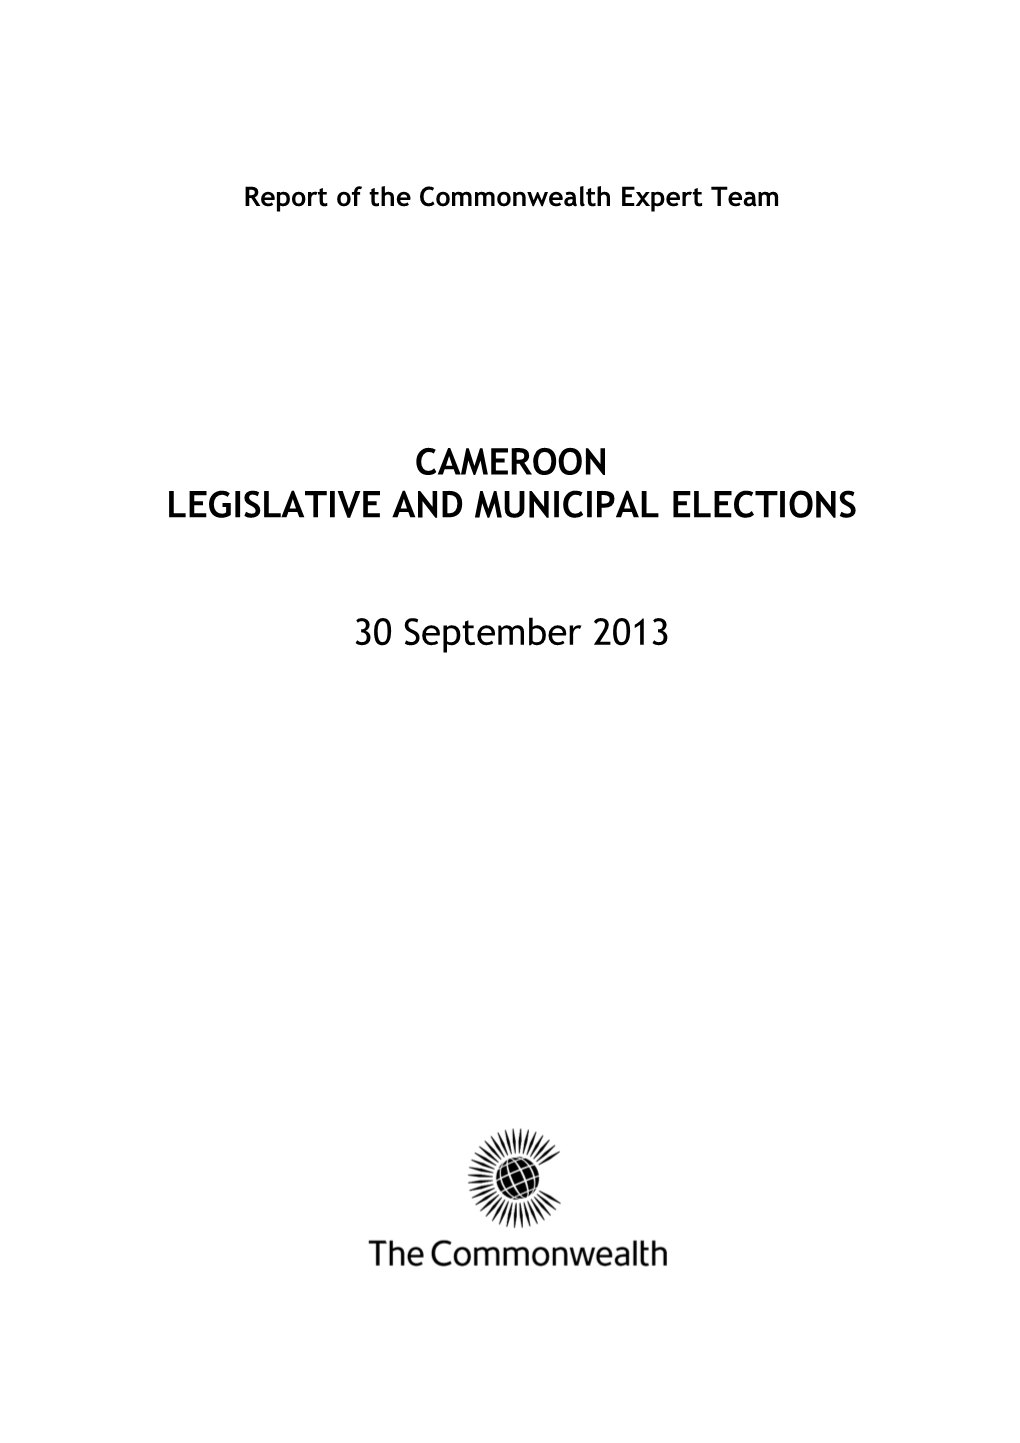 2013 CET Cameroon Legislative and Municipal Elections Report